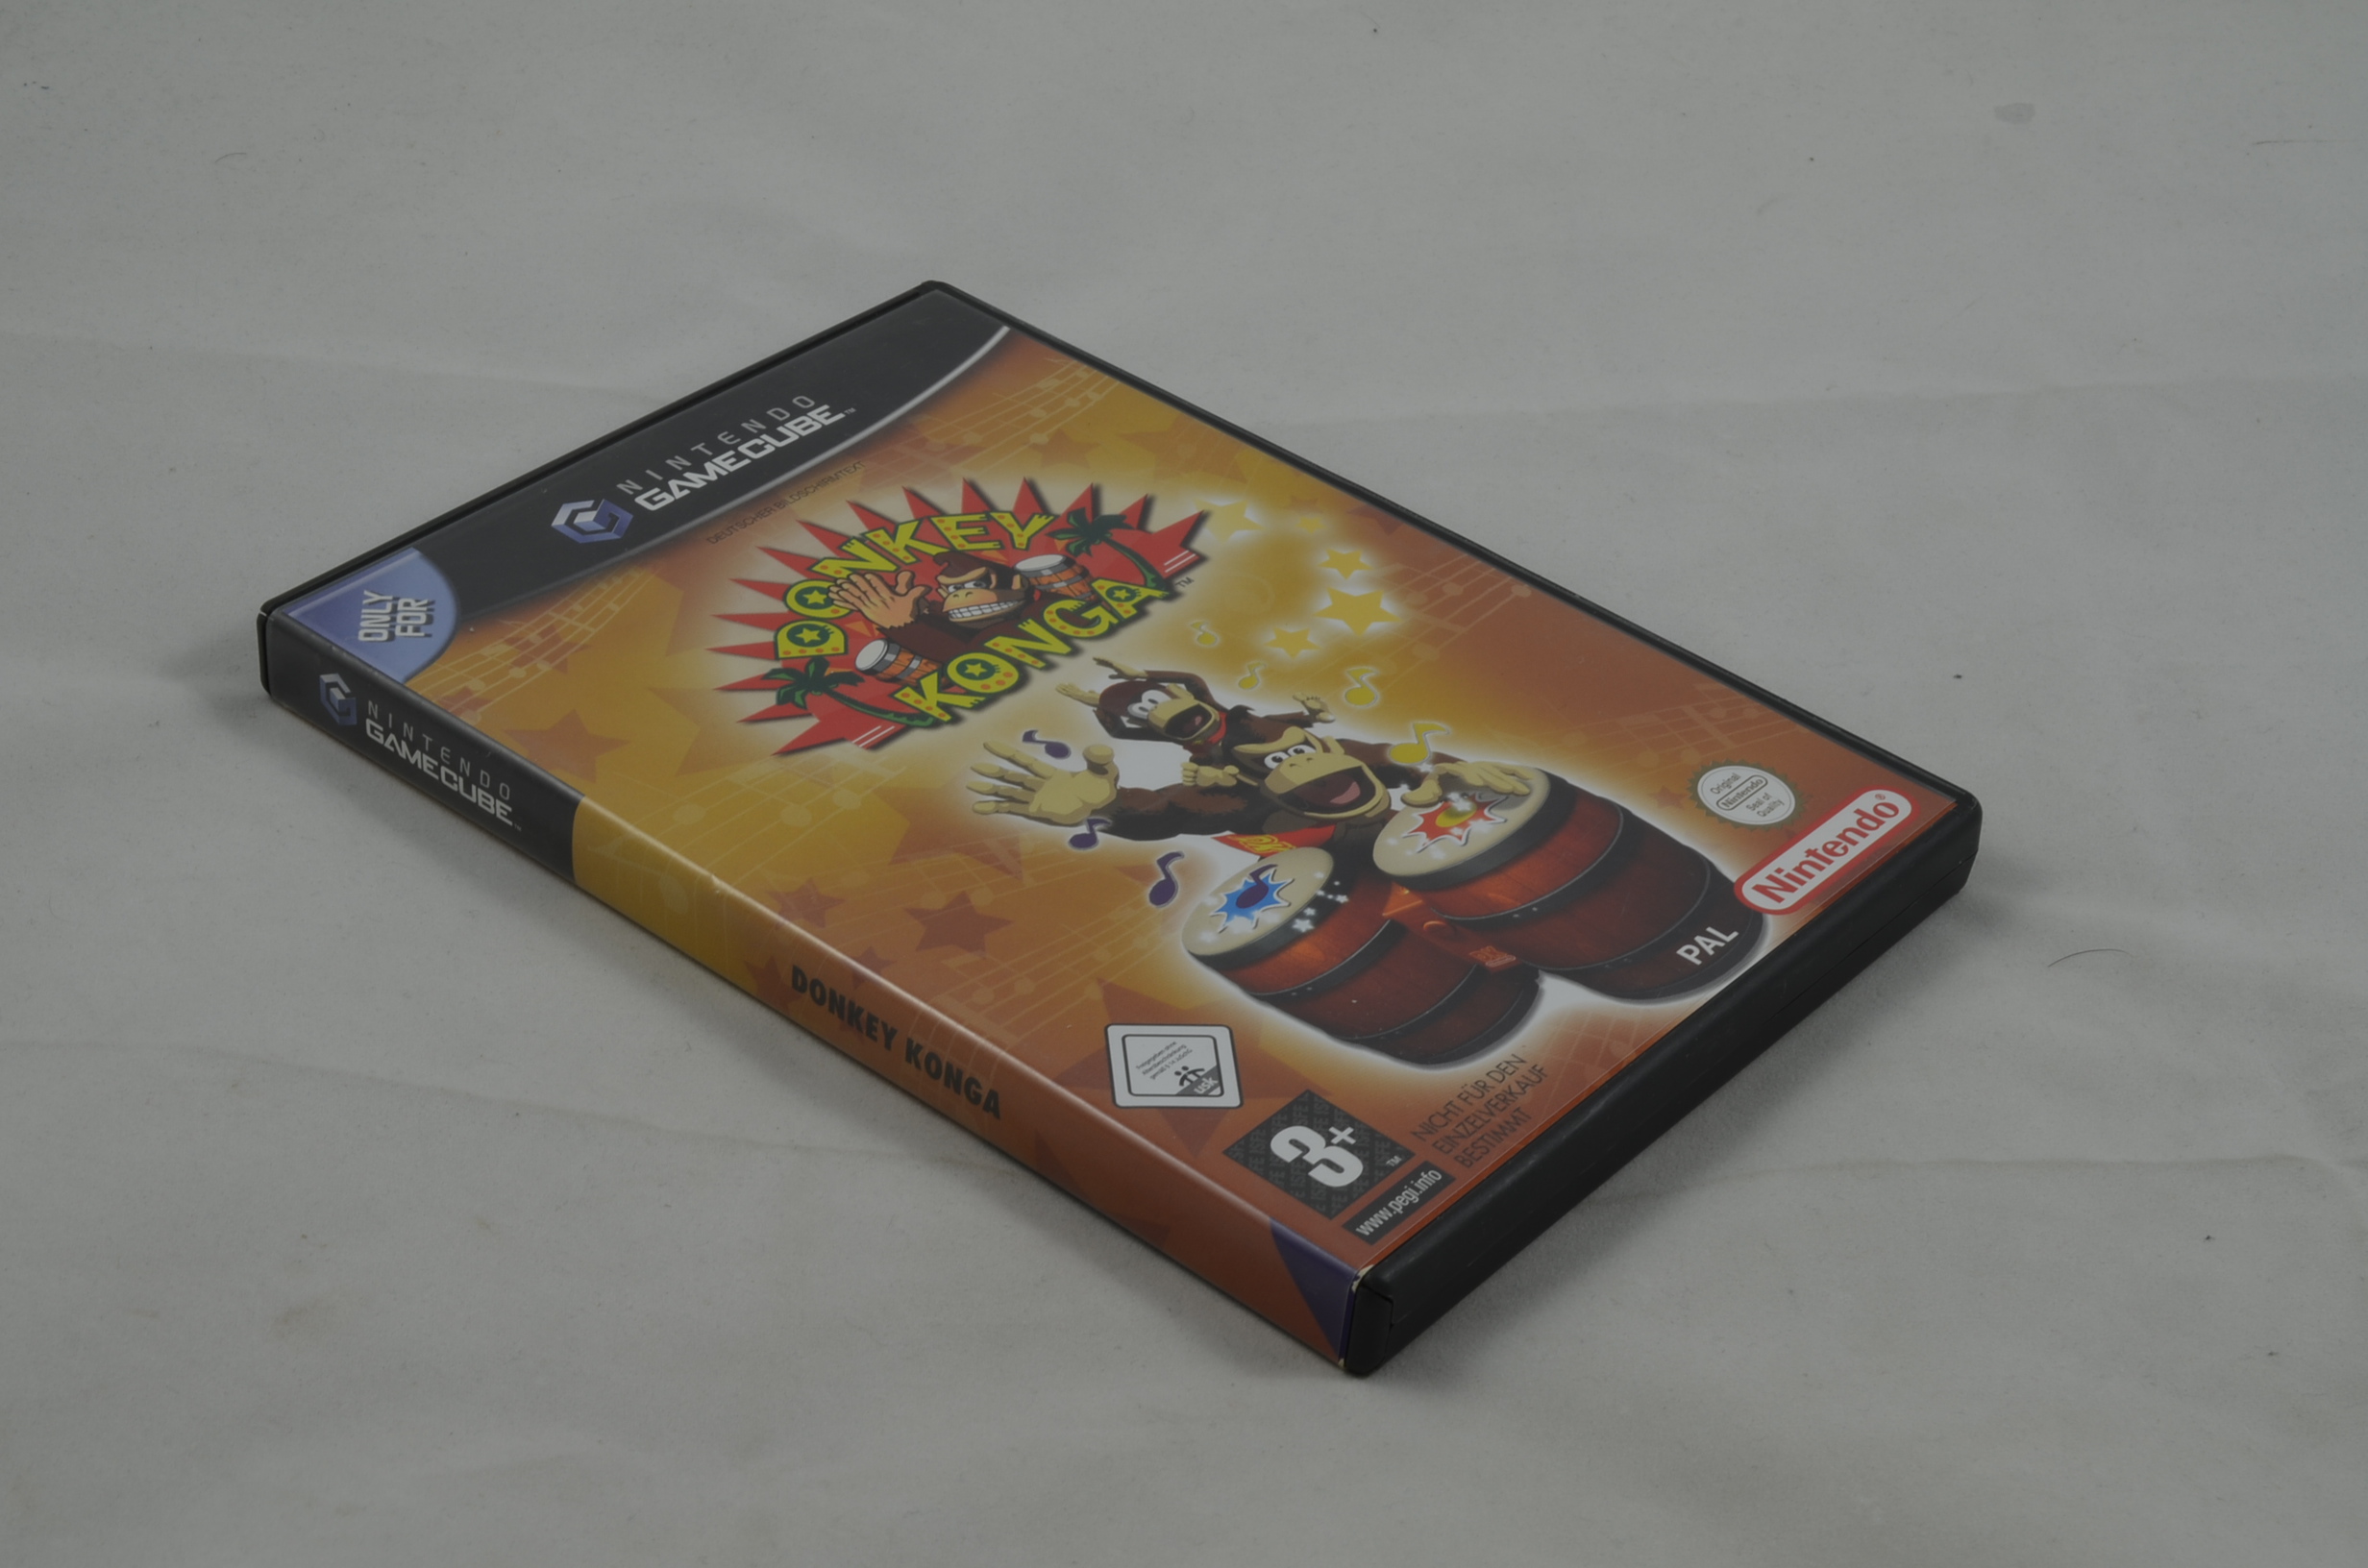 Produktbild von Donkey Konga GameCube Spiel CIB (sehr gut)